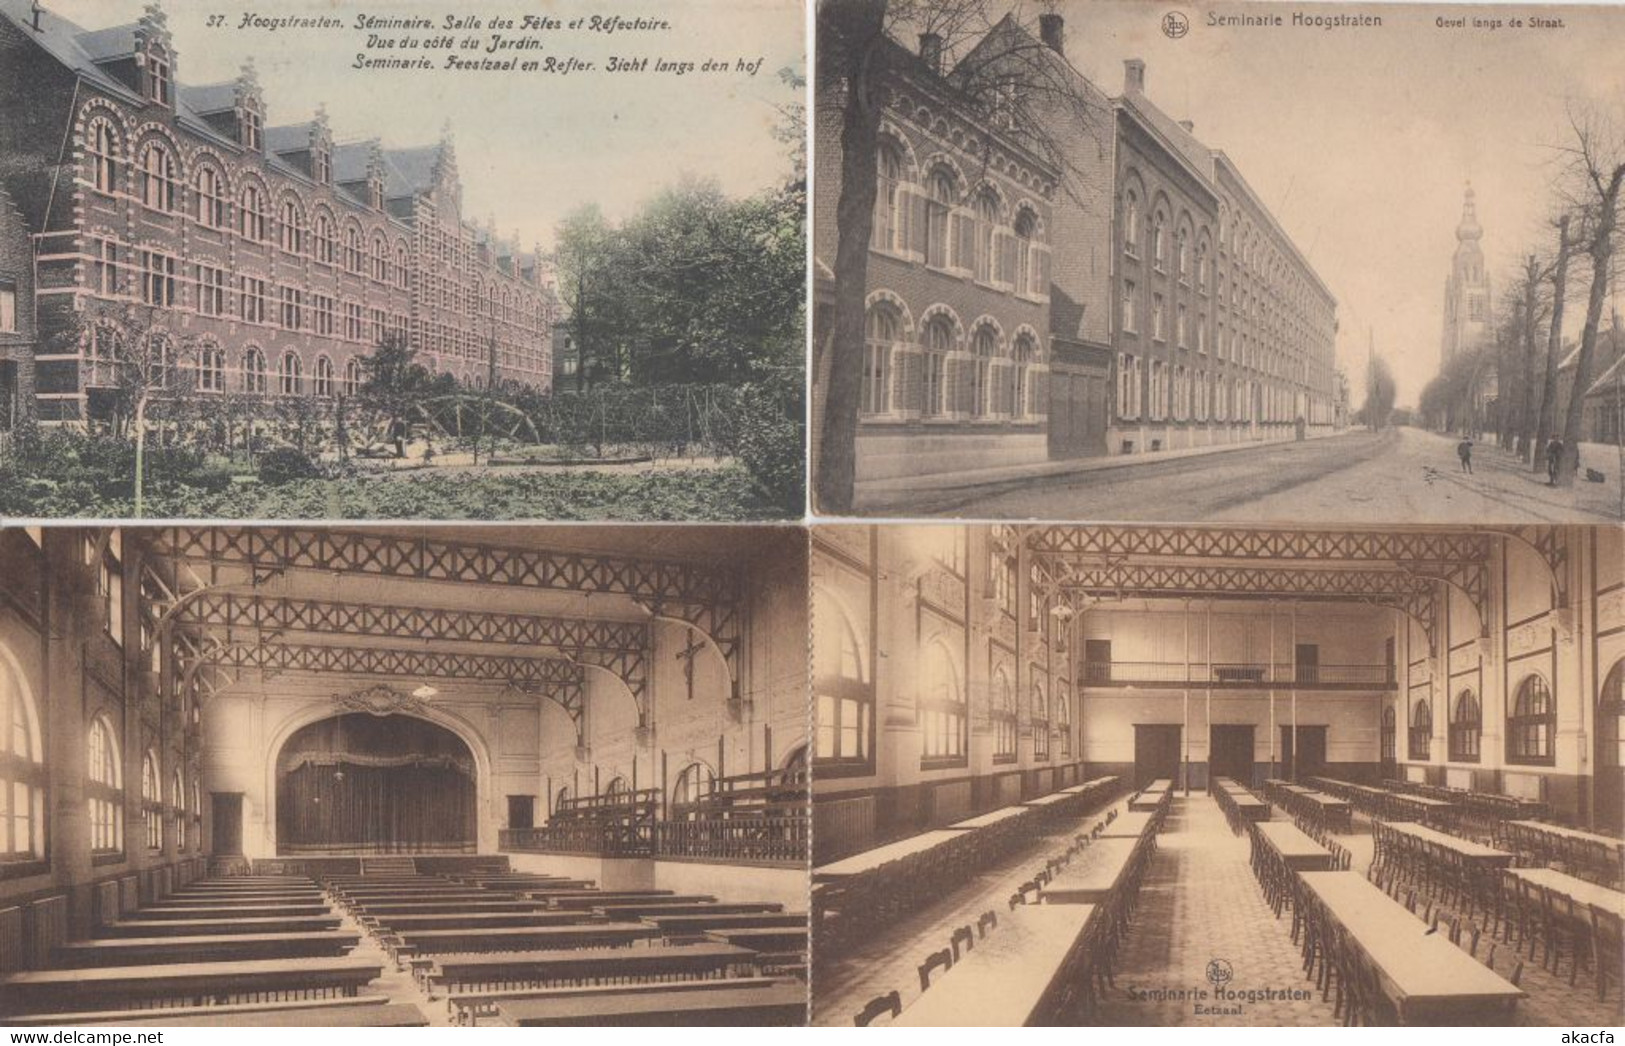 HOOGSTRATEN HOOGSTRAETEN(Antwerpen) Belgium 41 Postcards mostly pre-1940 (L3851)